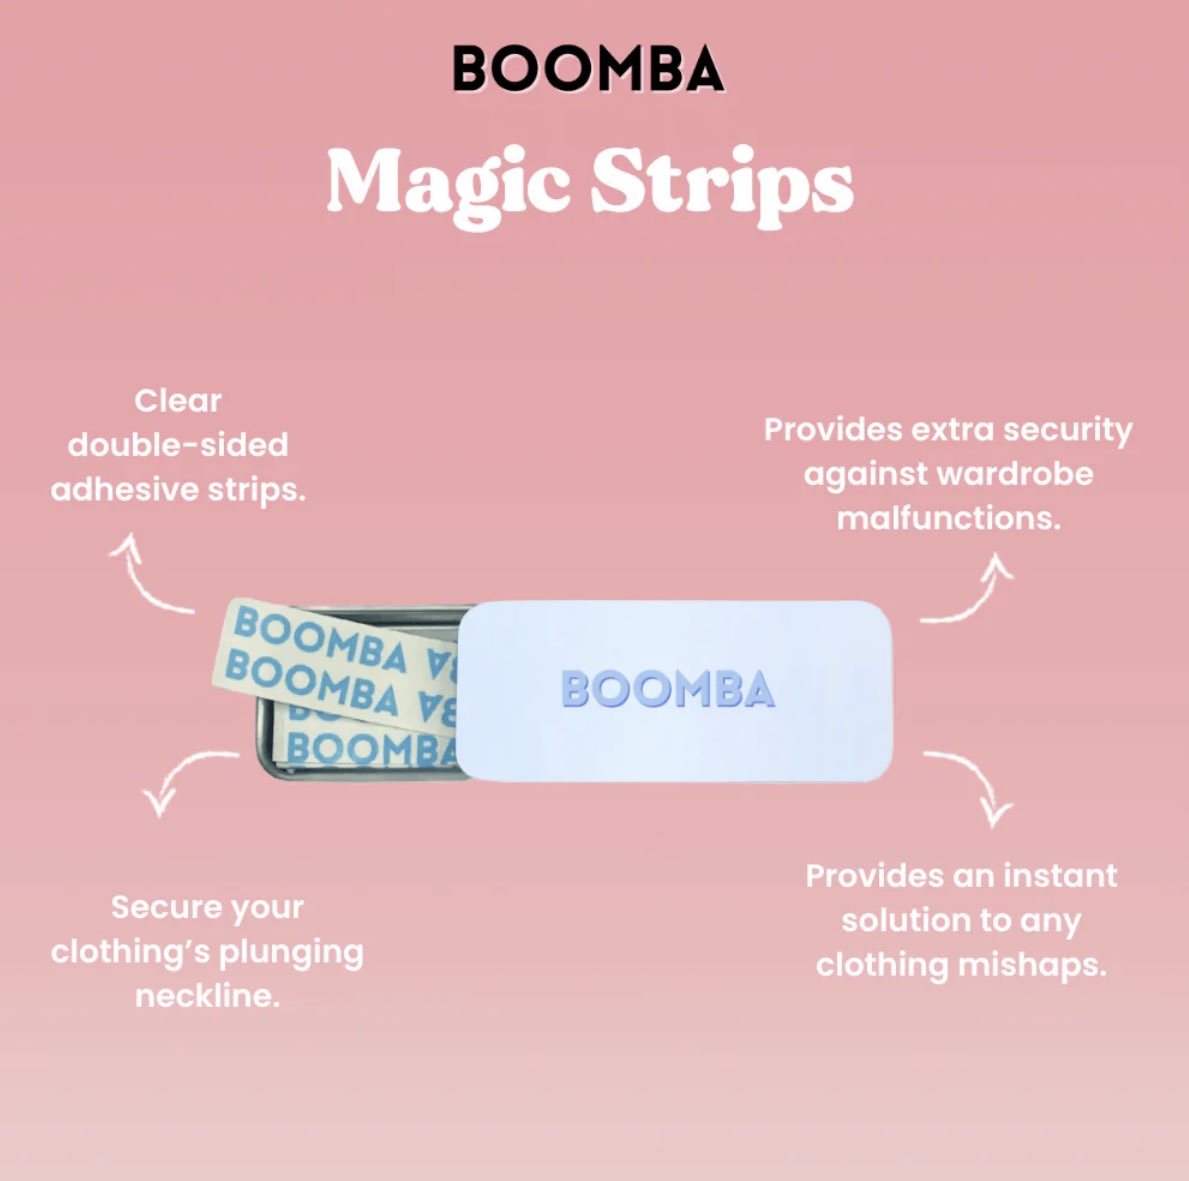 BOOMBA Magic Strips